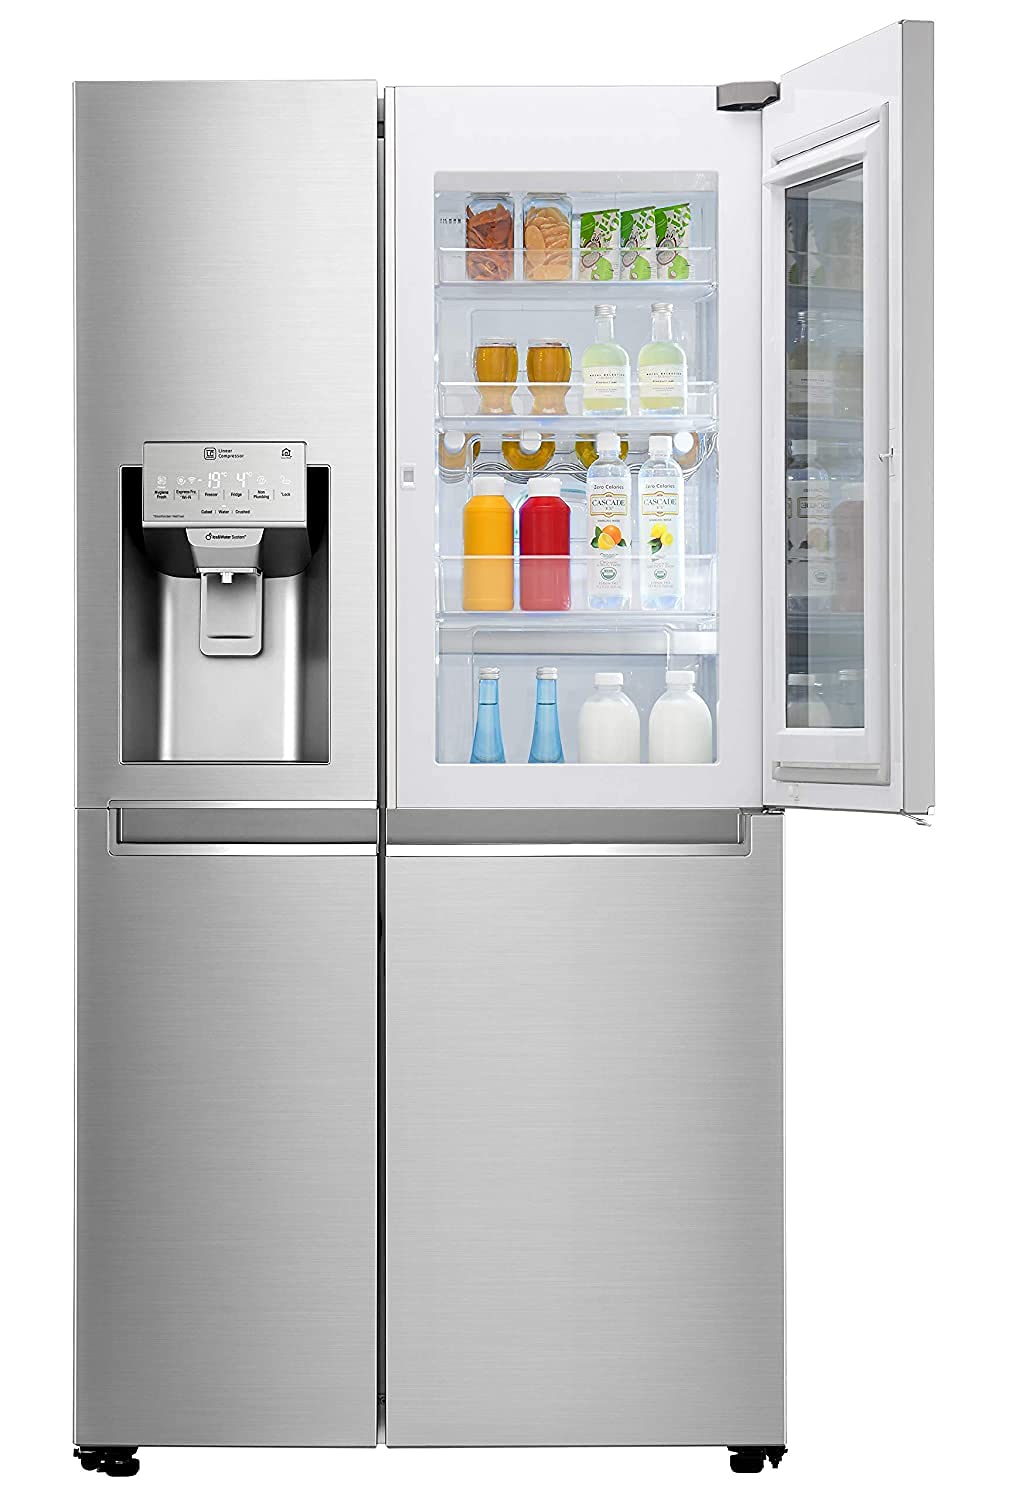 A lg refrigerators upper open